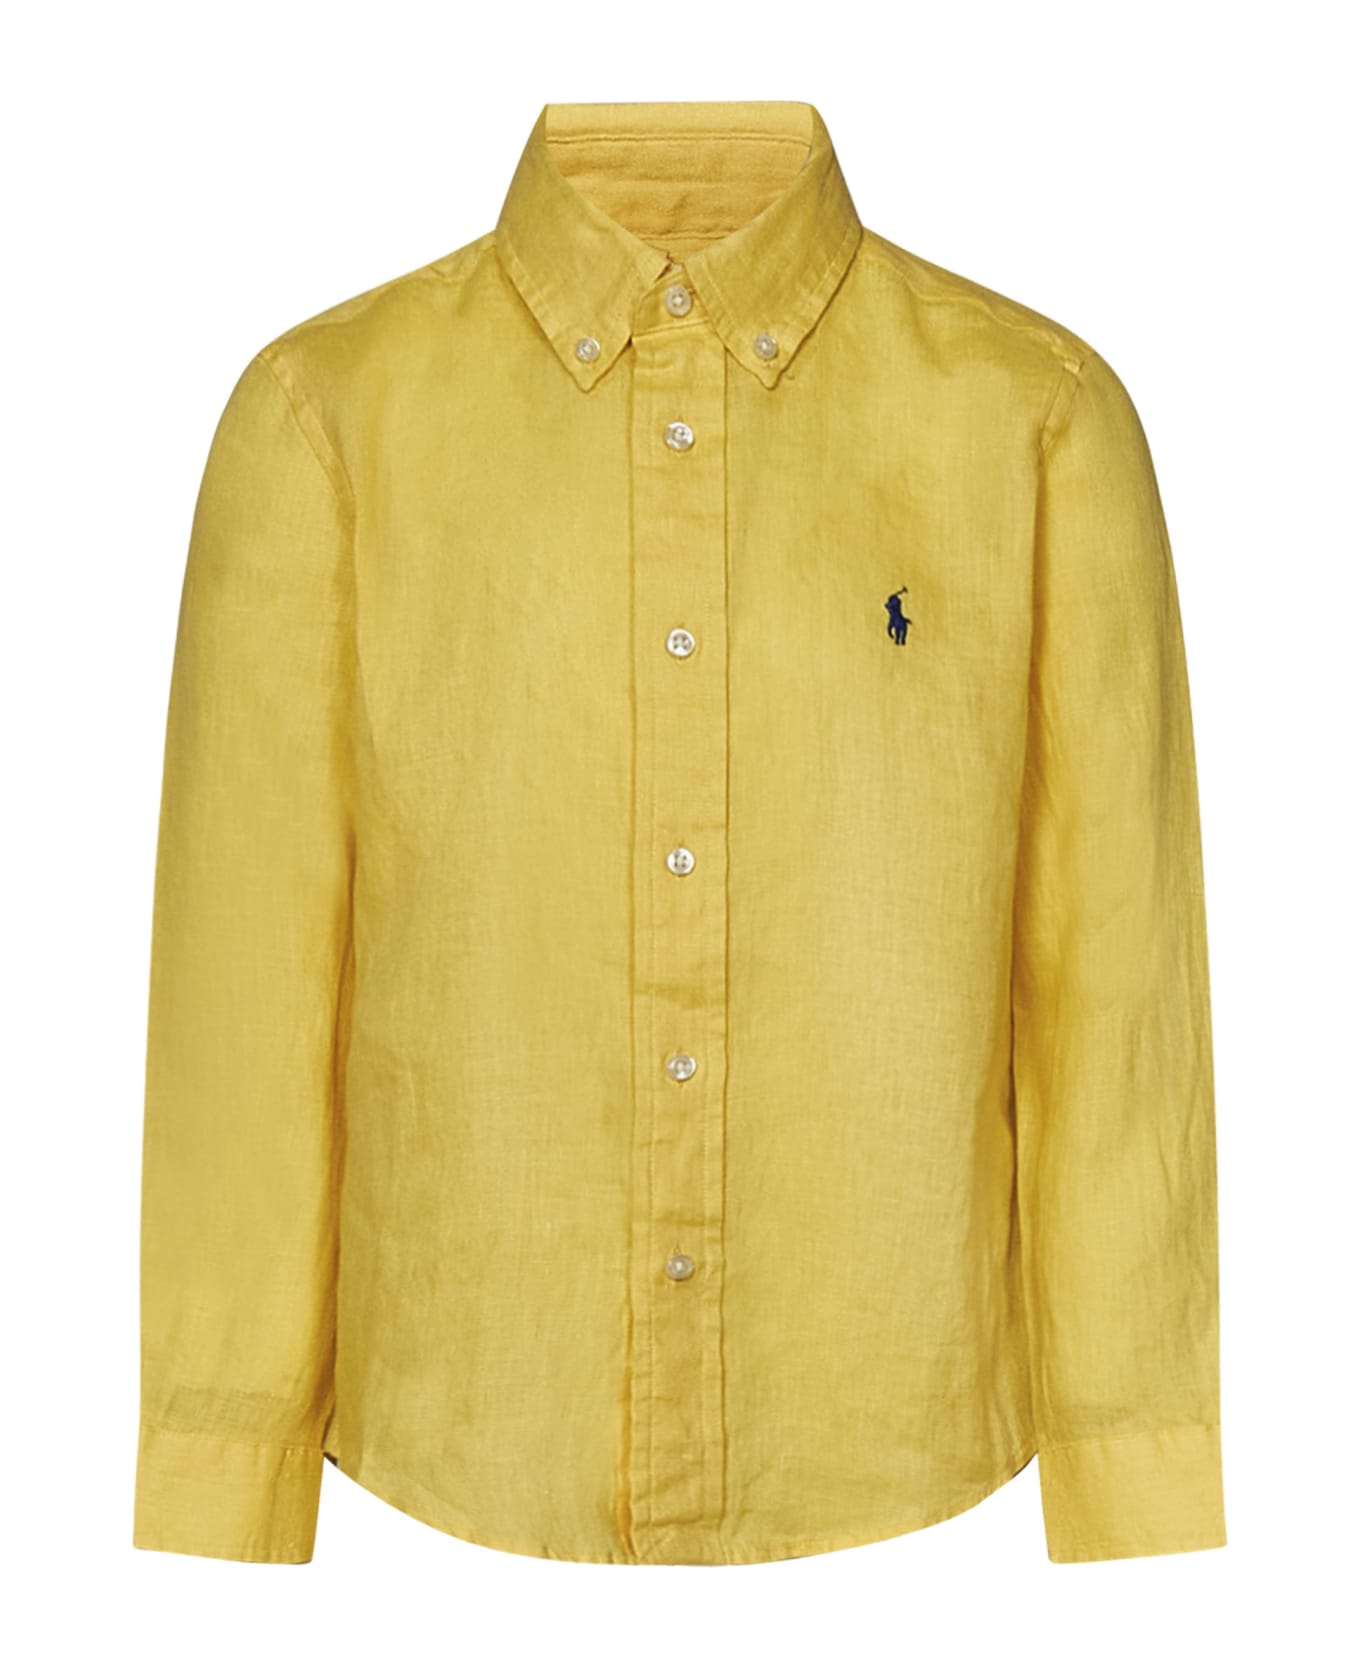 Polo Ralph Lauren Kids Shirt - Yellow